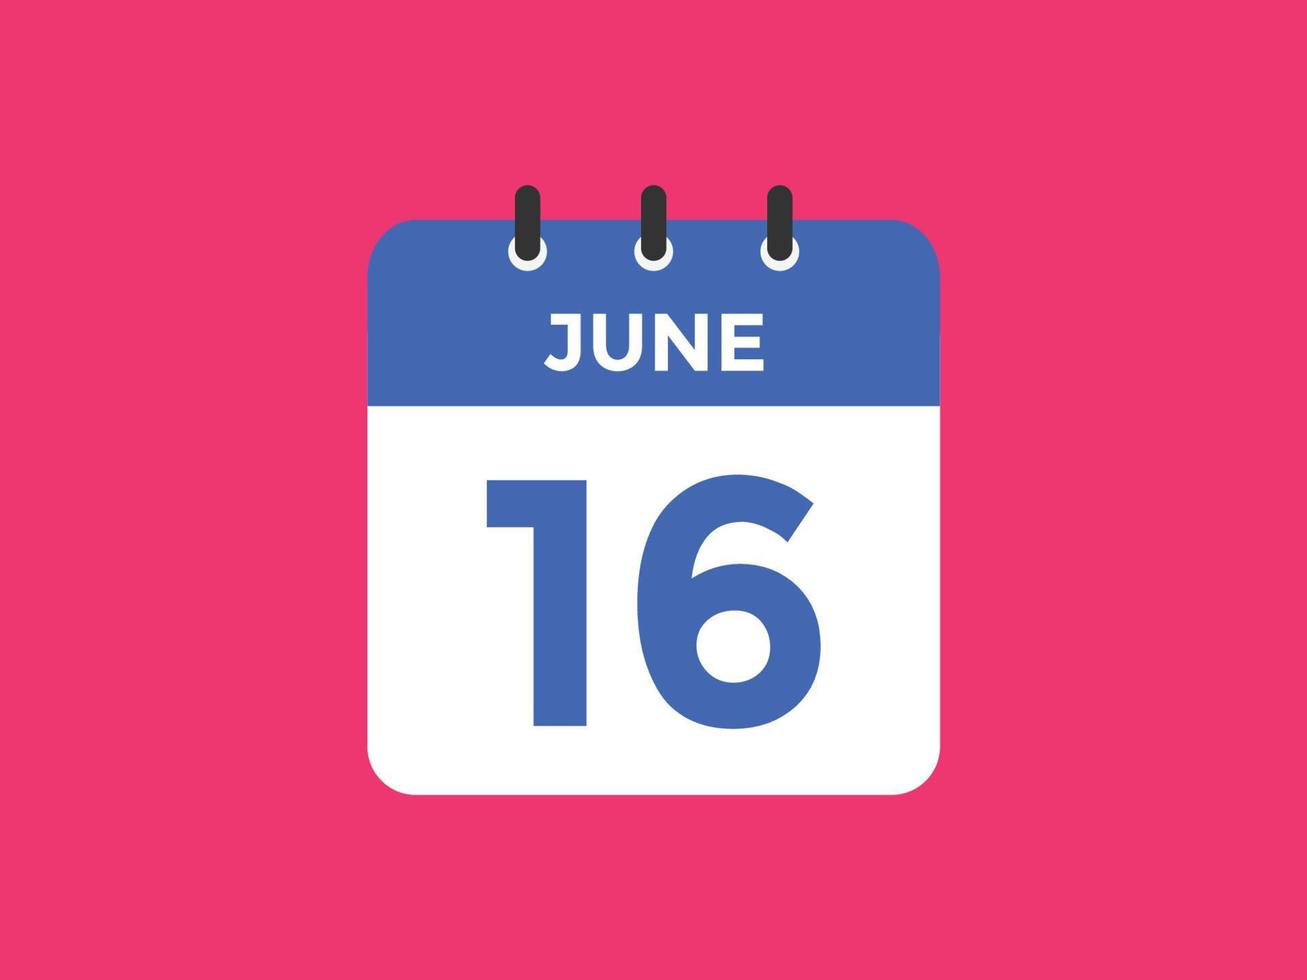 rappel du calendrier du 16 juin. Modèle d'icône de calendrier quotidien du 16 juin. modèle de conception d'icône calendrier 16 juin. illustration vectorielle vecteur